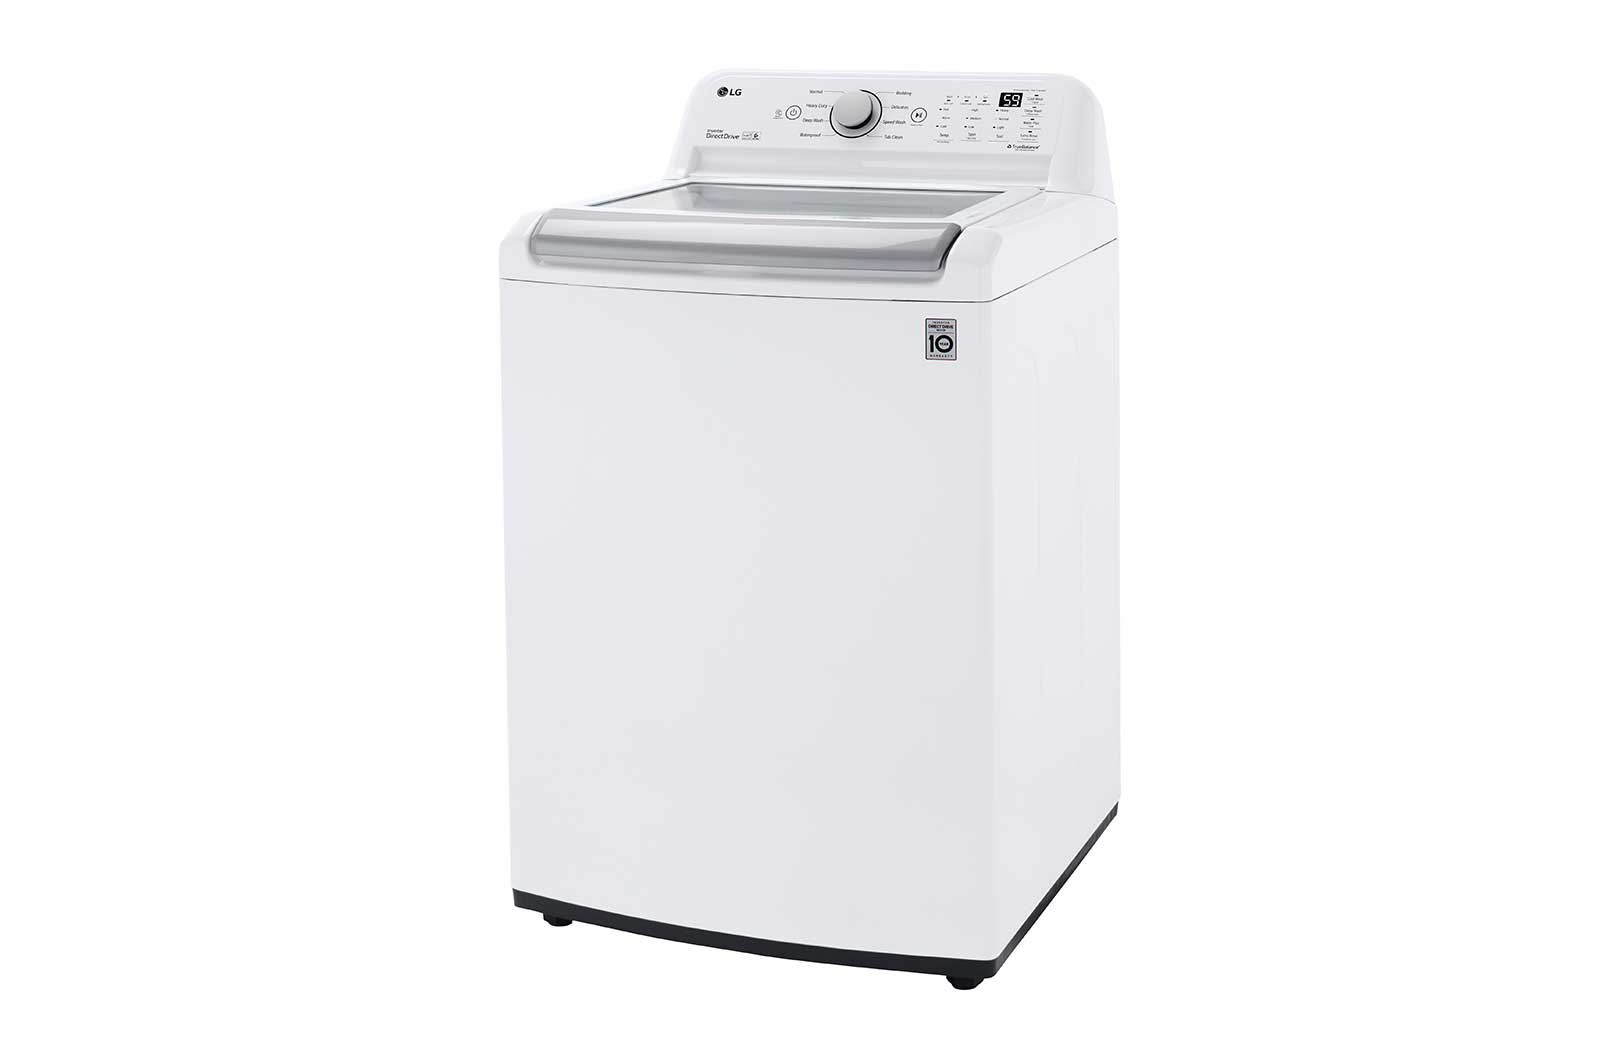 LG Recalls Top-Loading Washing Machines Due to Risk of Injury